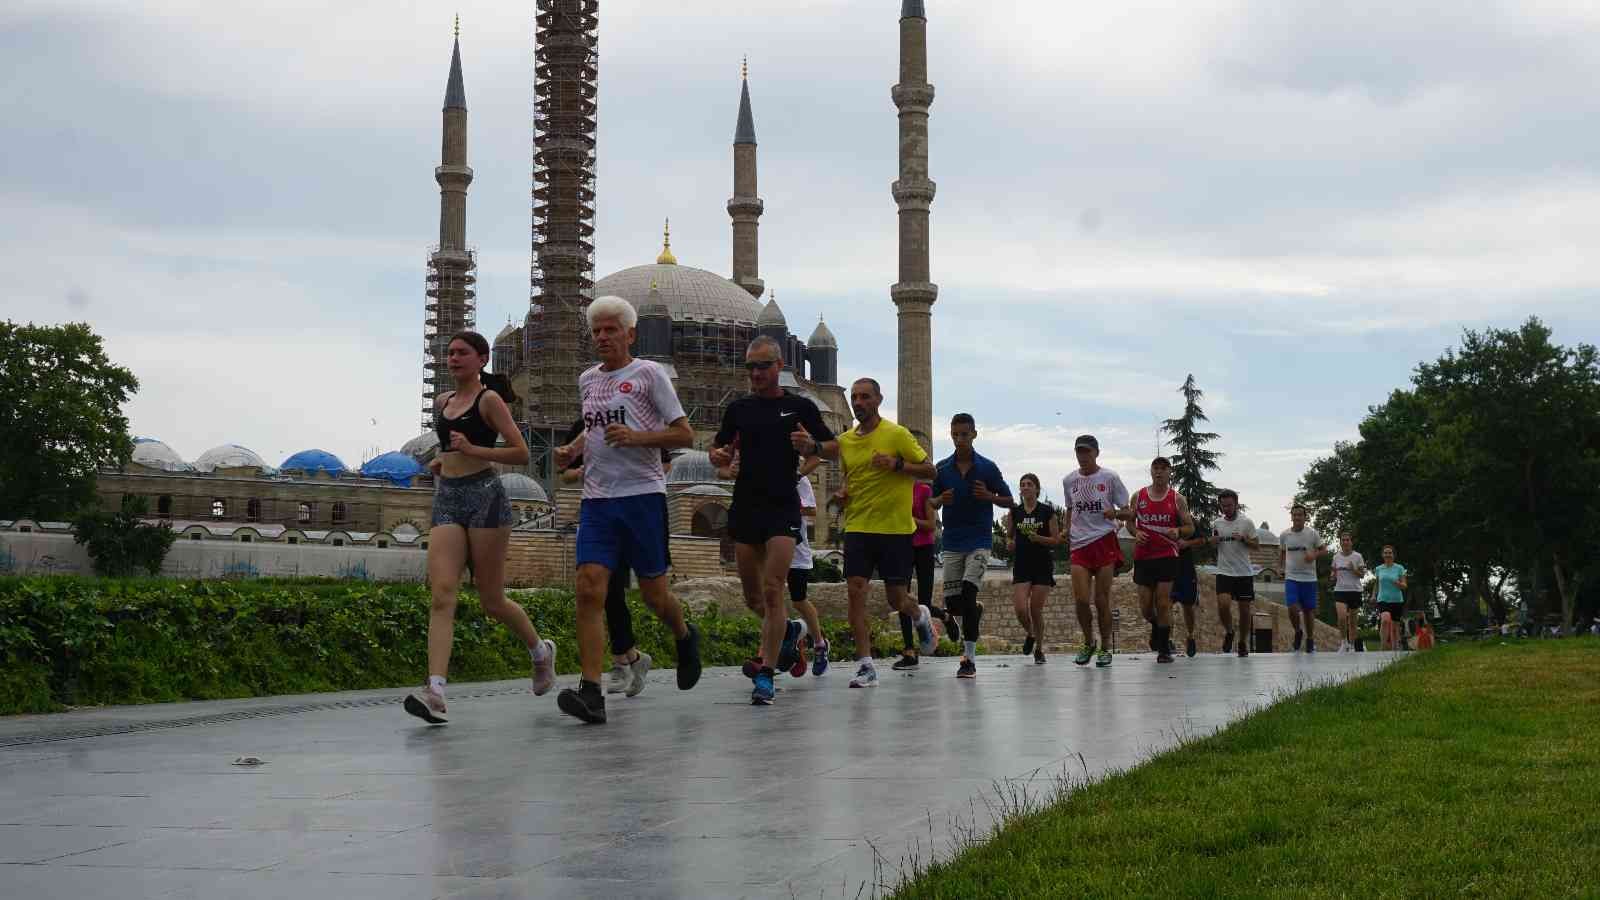 30 Atlet, Mimar Sinanın Ustalık Eseri Selimiye Çevresinde 11 Tur Attı